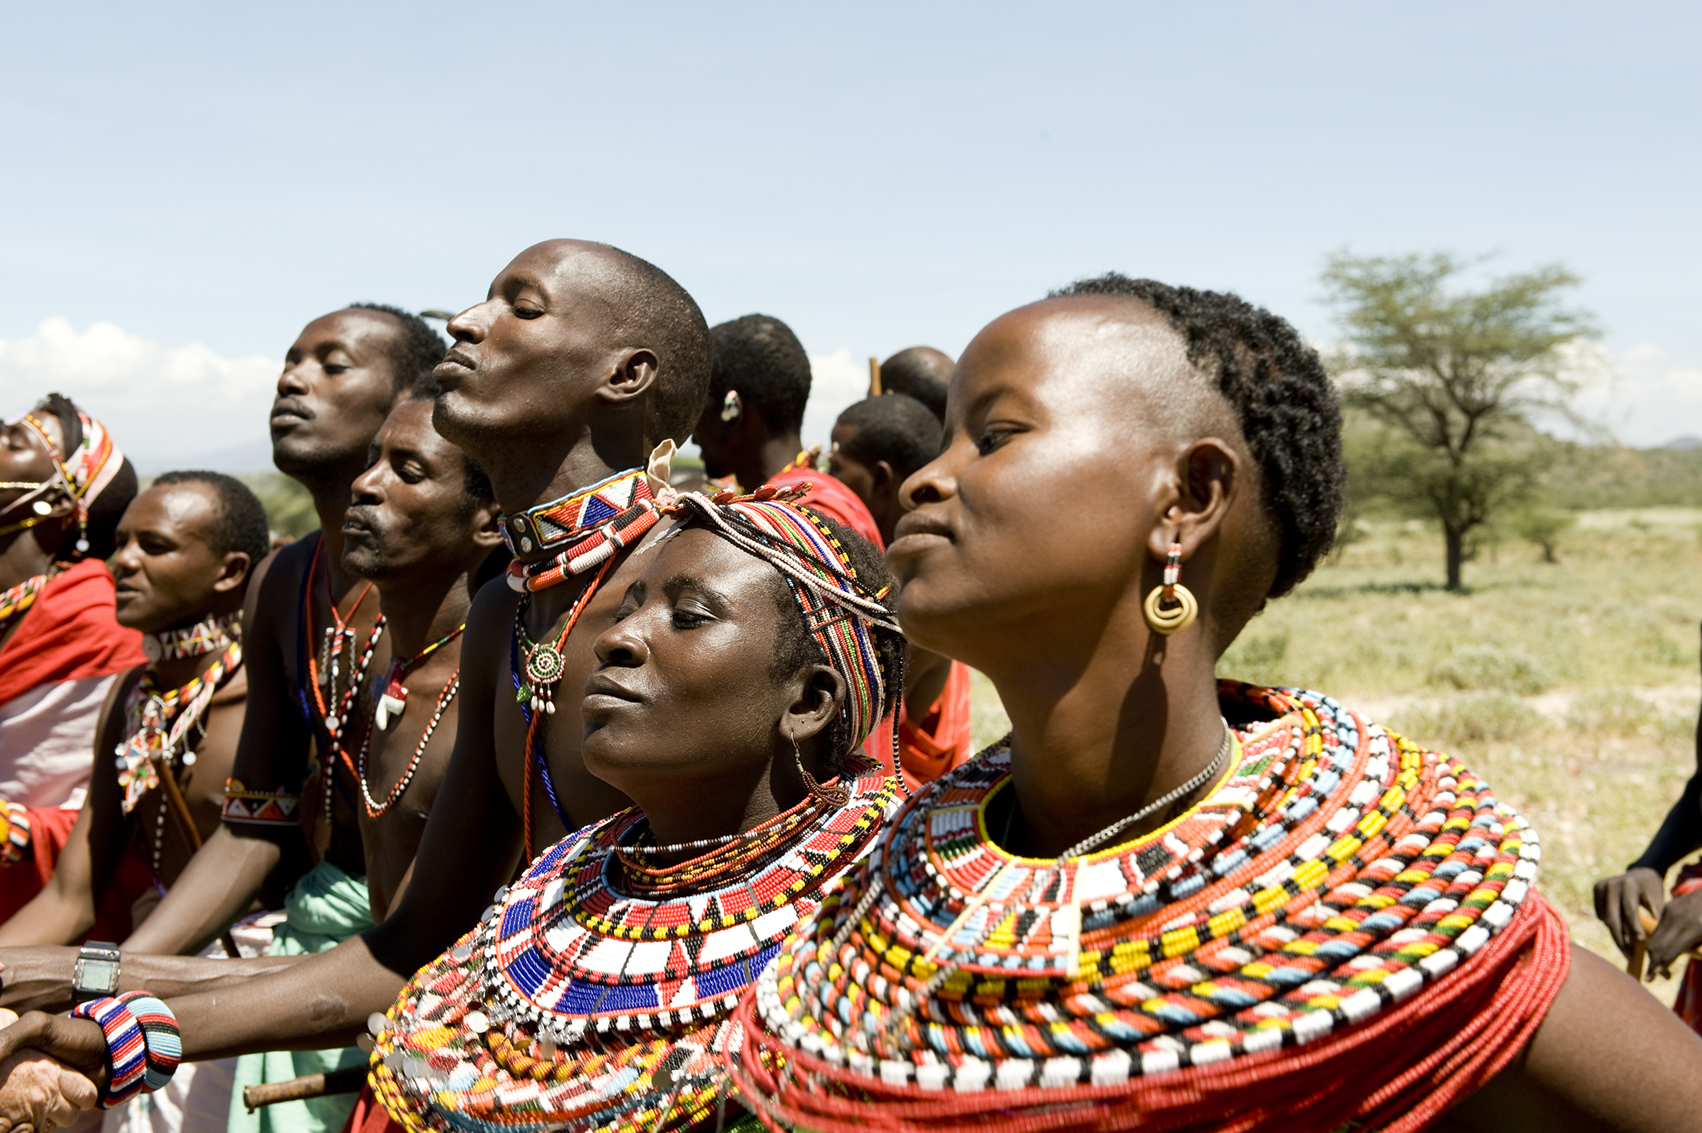  Samburu, Kenia. 2008 